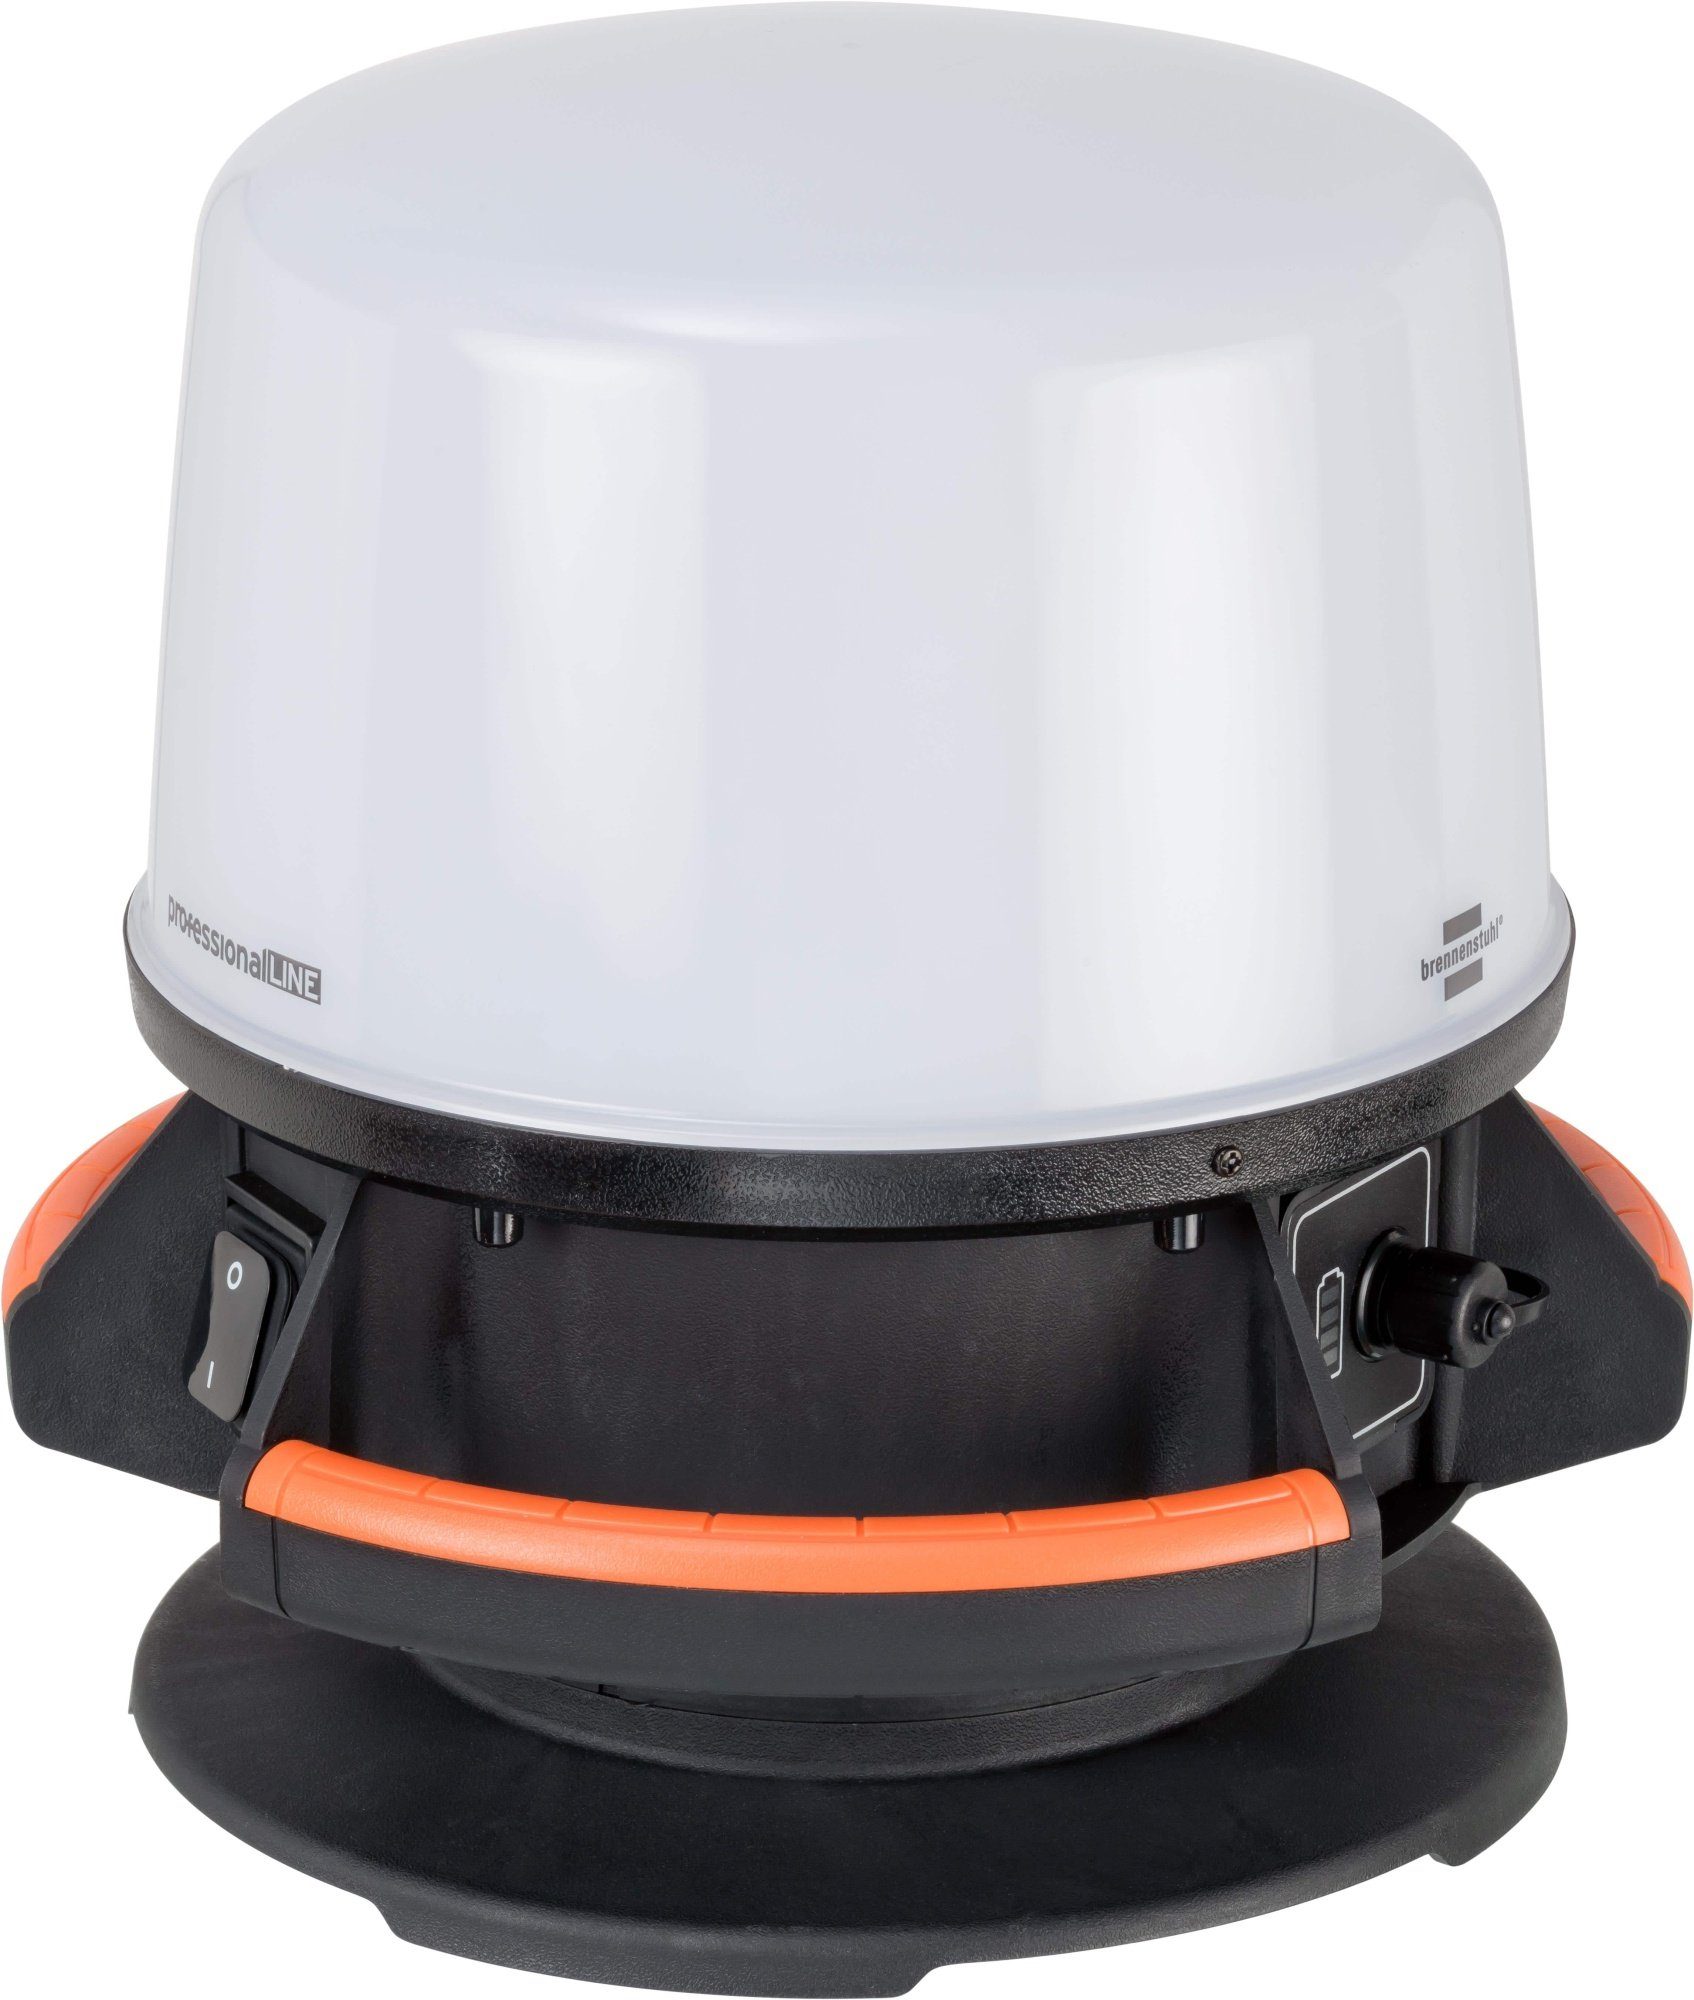 qpool24 Baustrahler, Brennenstuhl professionalLINE Mobiler 360° Hybrid LED Strahler | Baustrahler